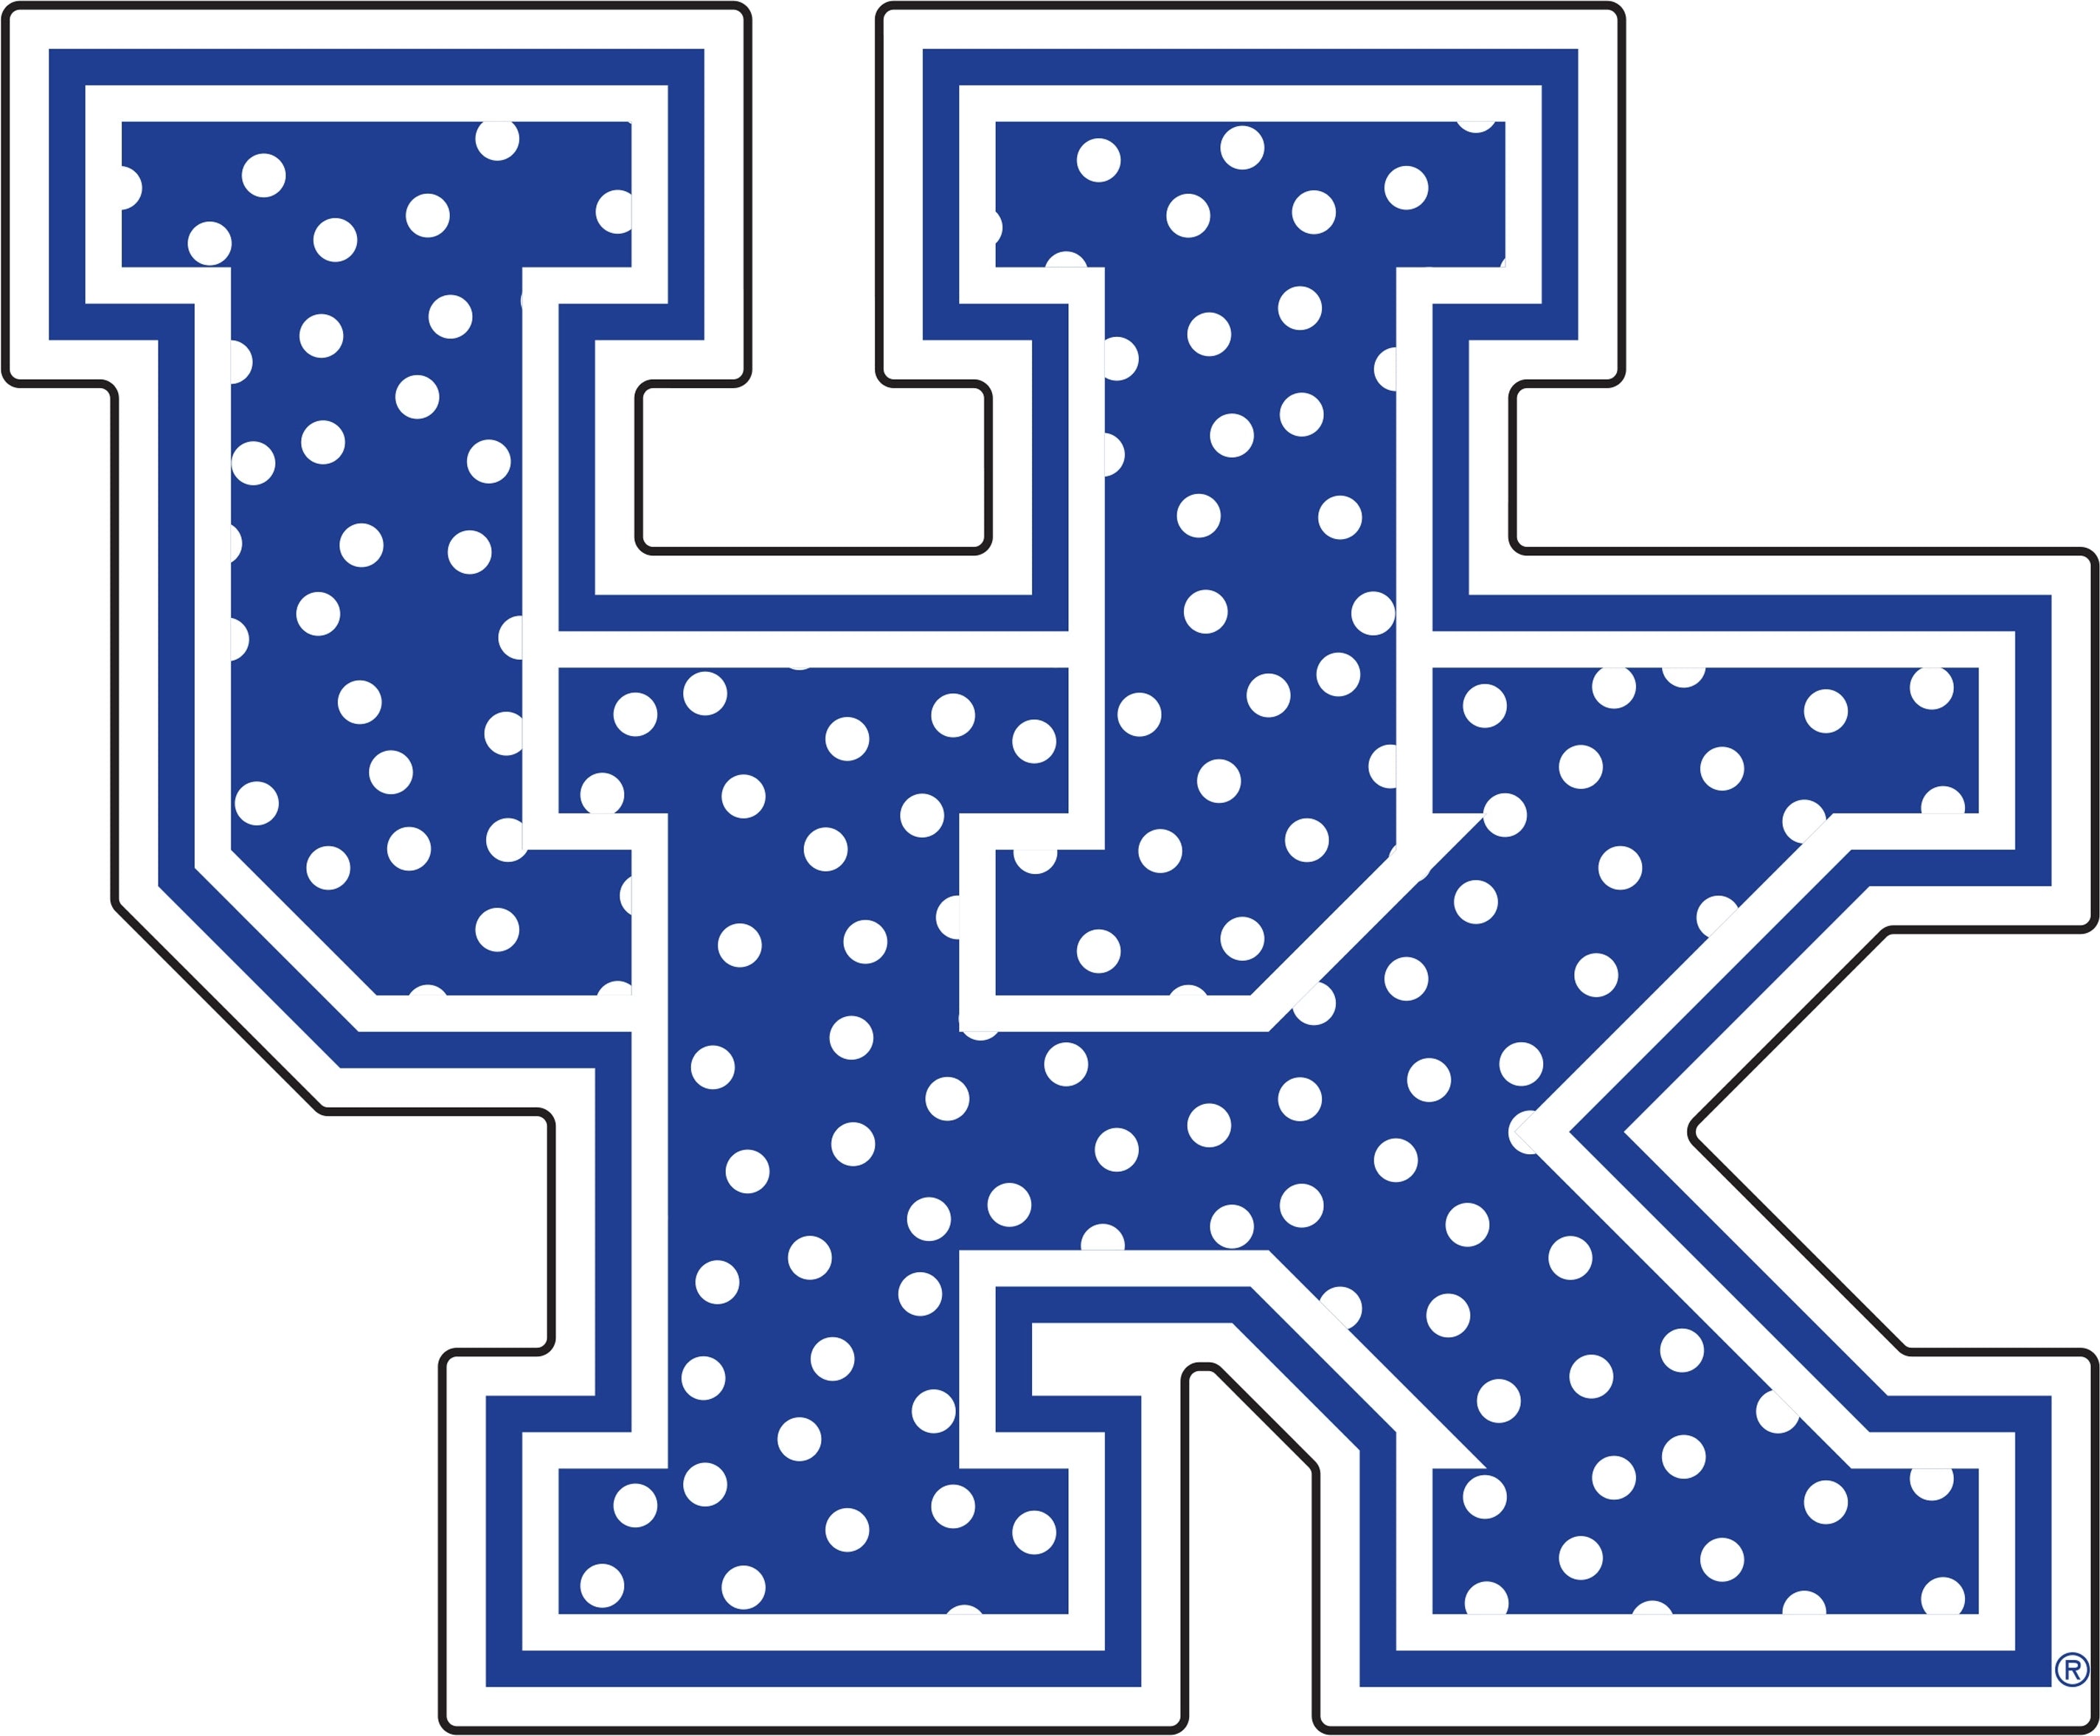 University of Kentucky Polka Dot UK Logo Magnet [Blue]